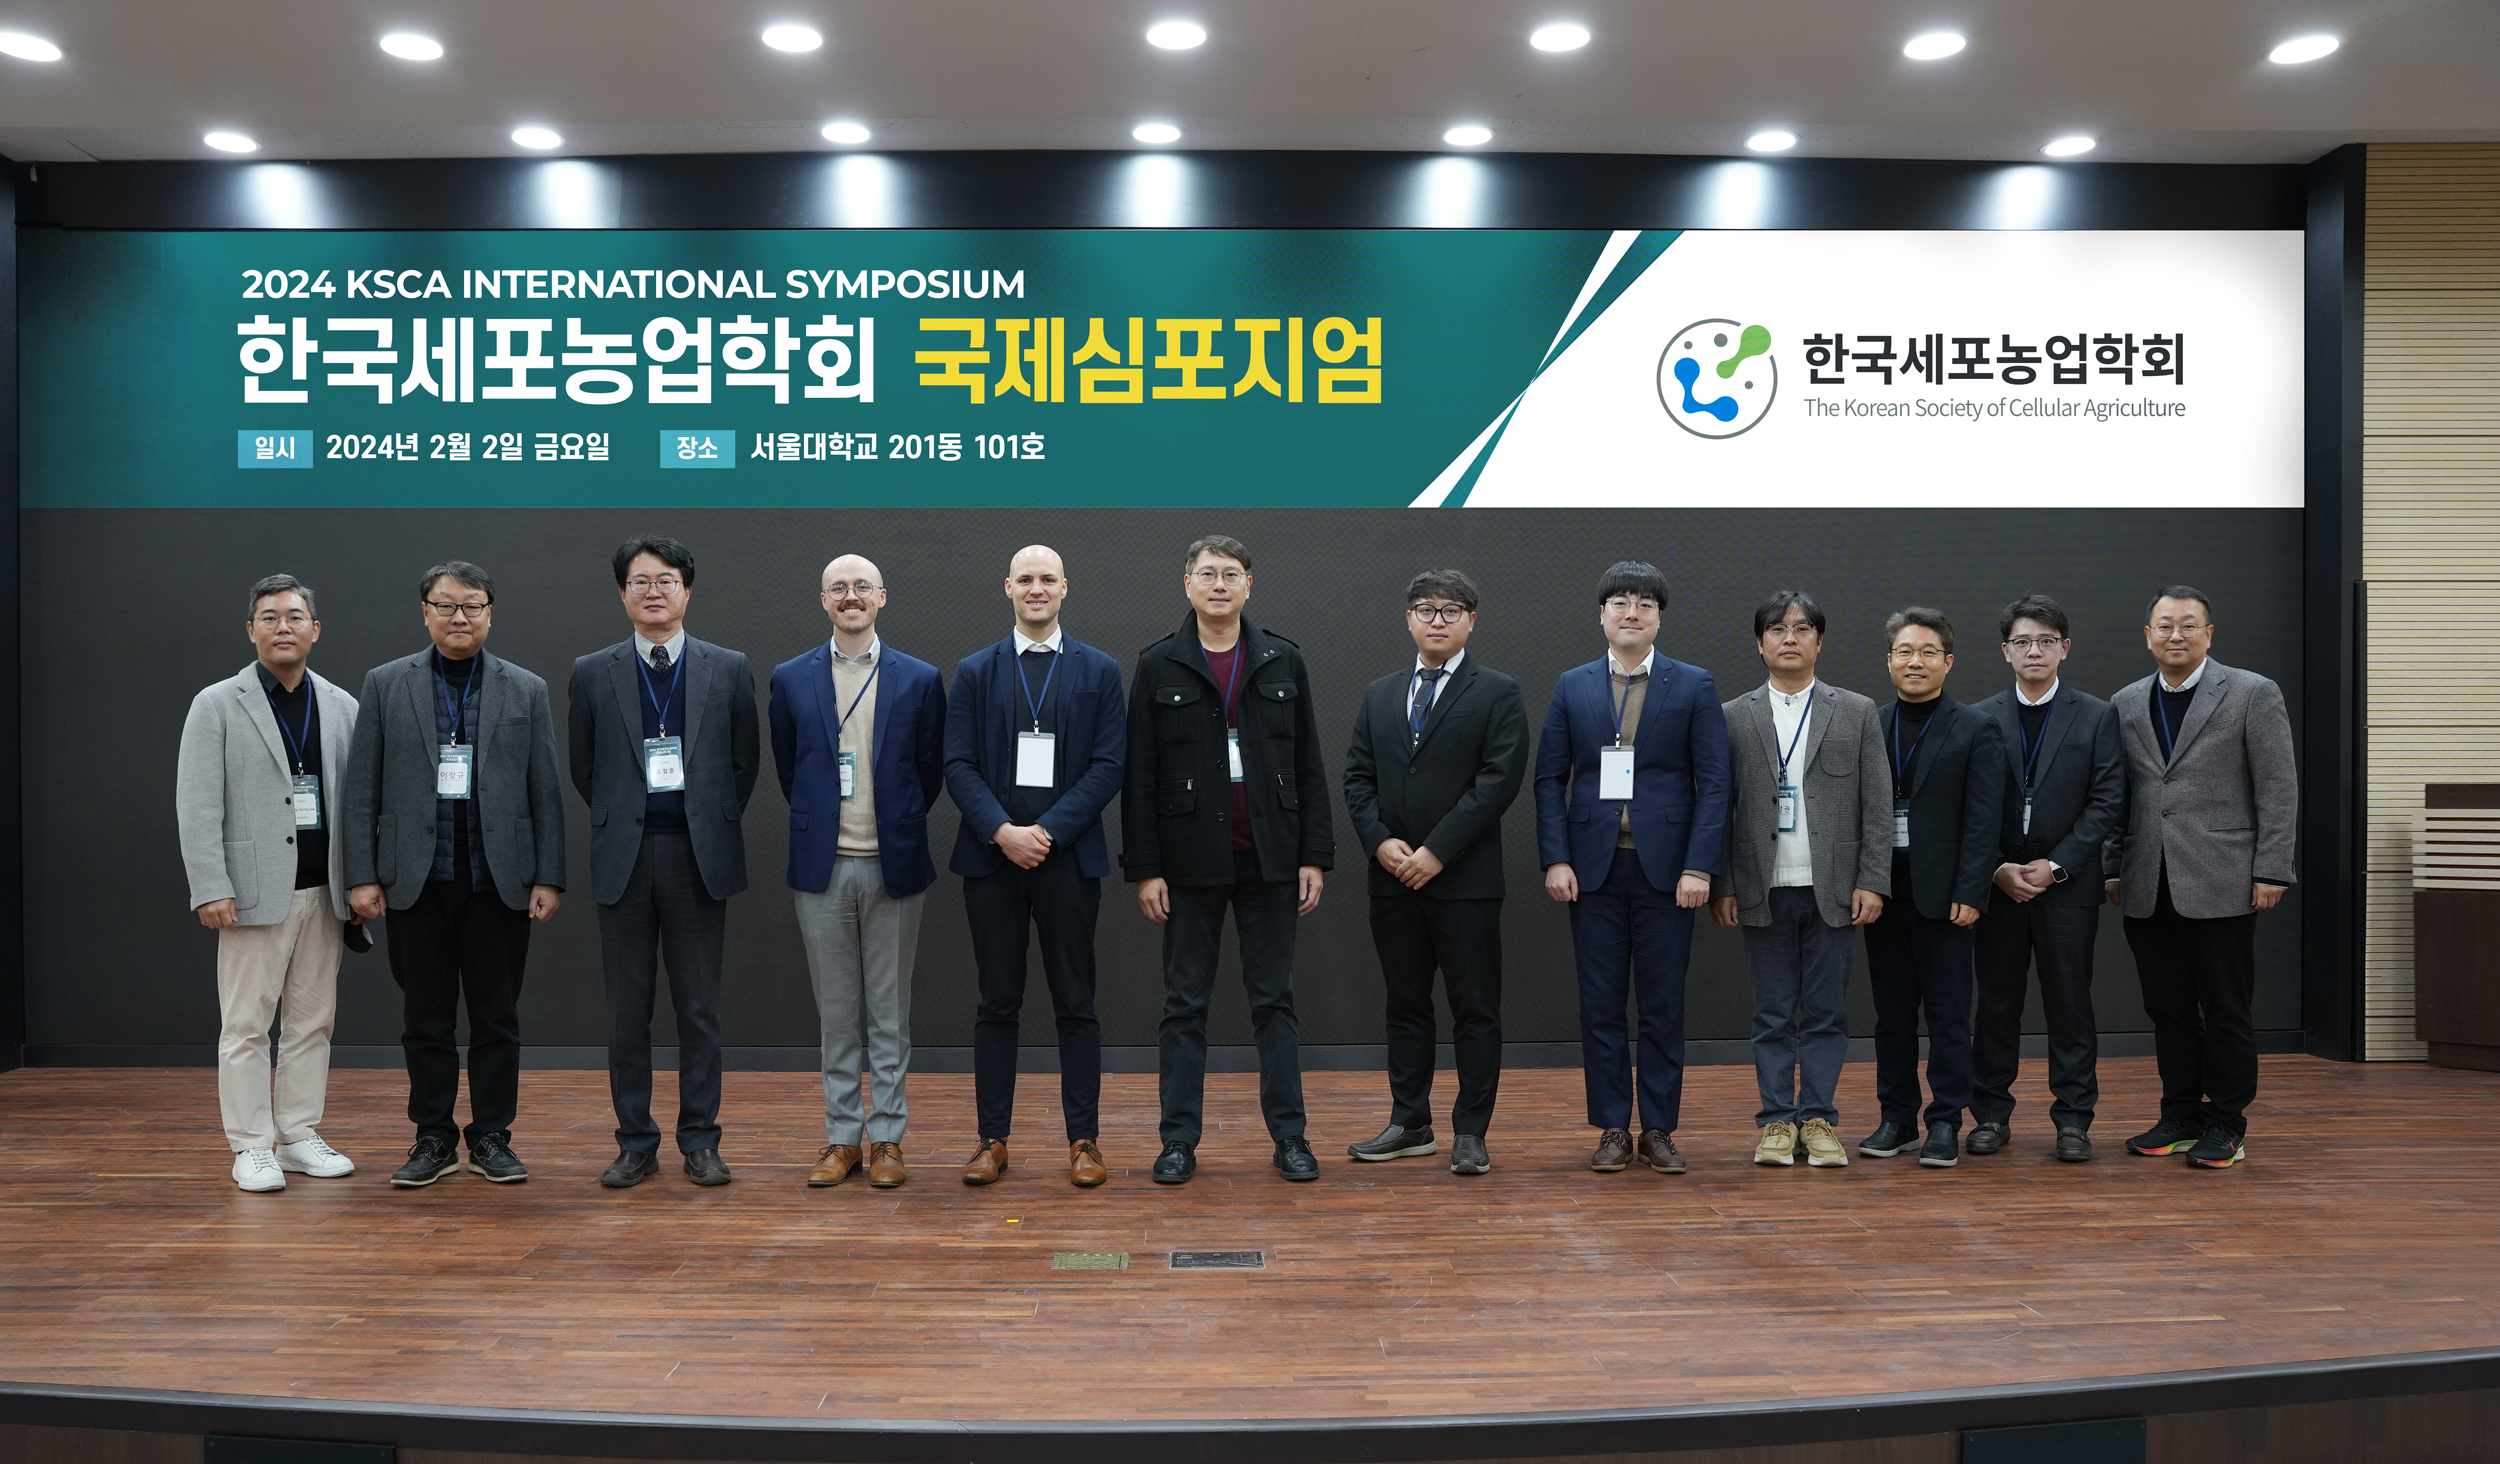 스페이스에프, 한국세포농업학회와 국제 심포지엄’ 공동 주최